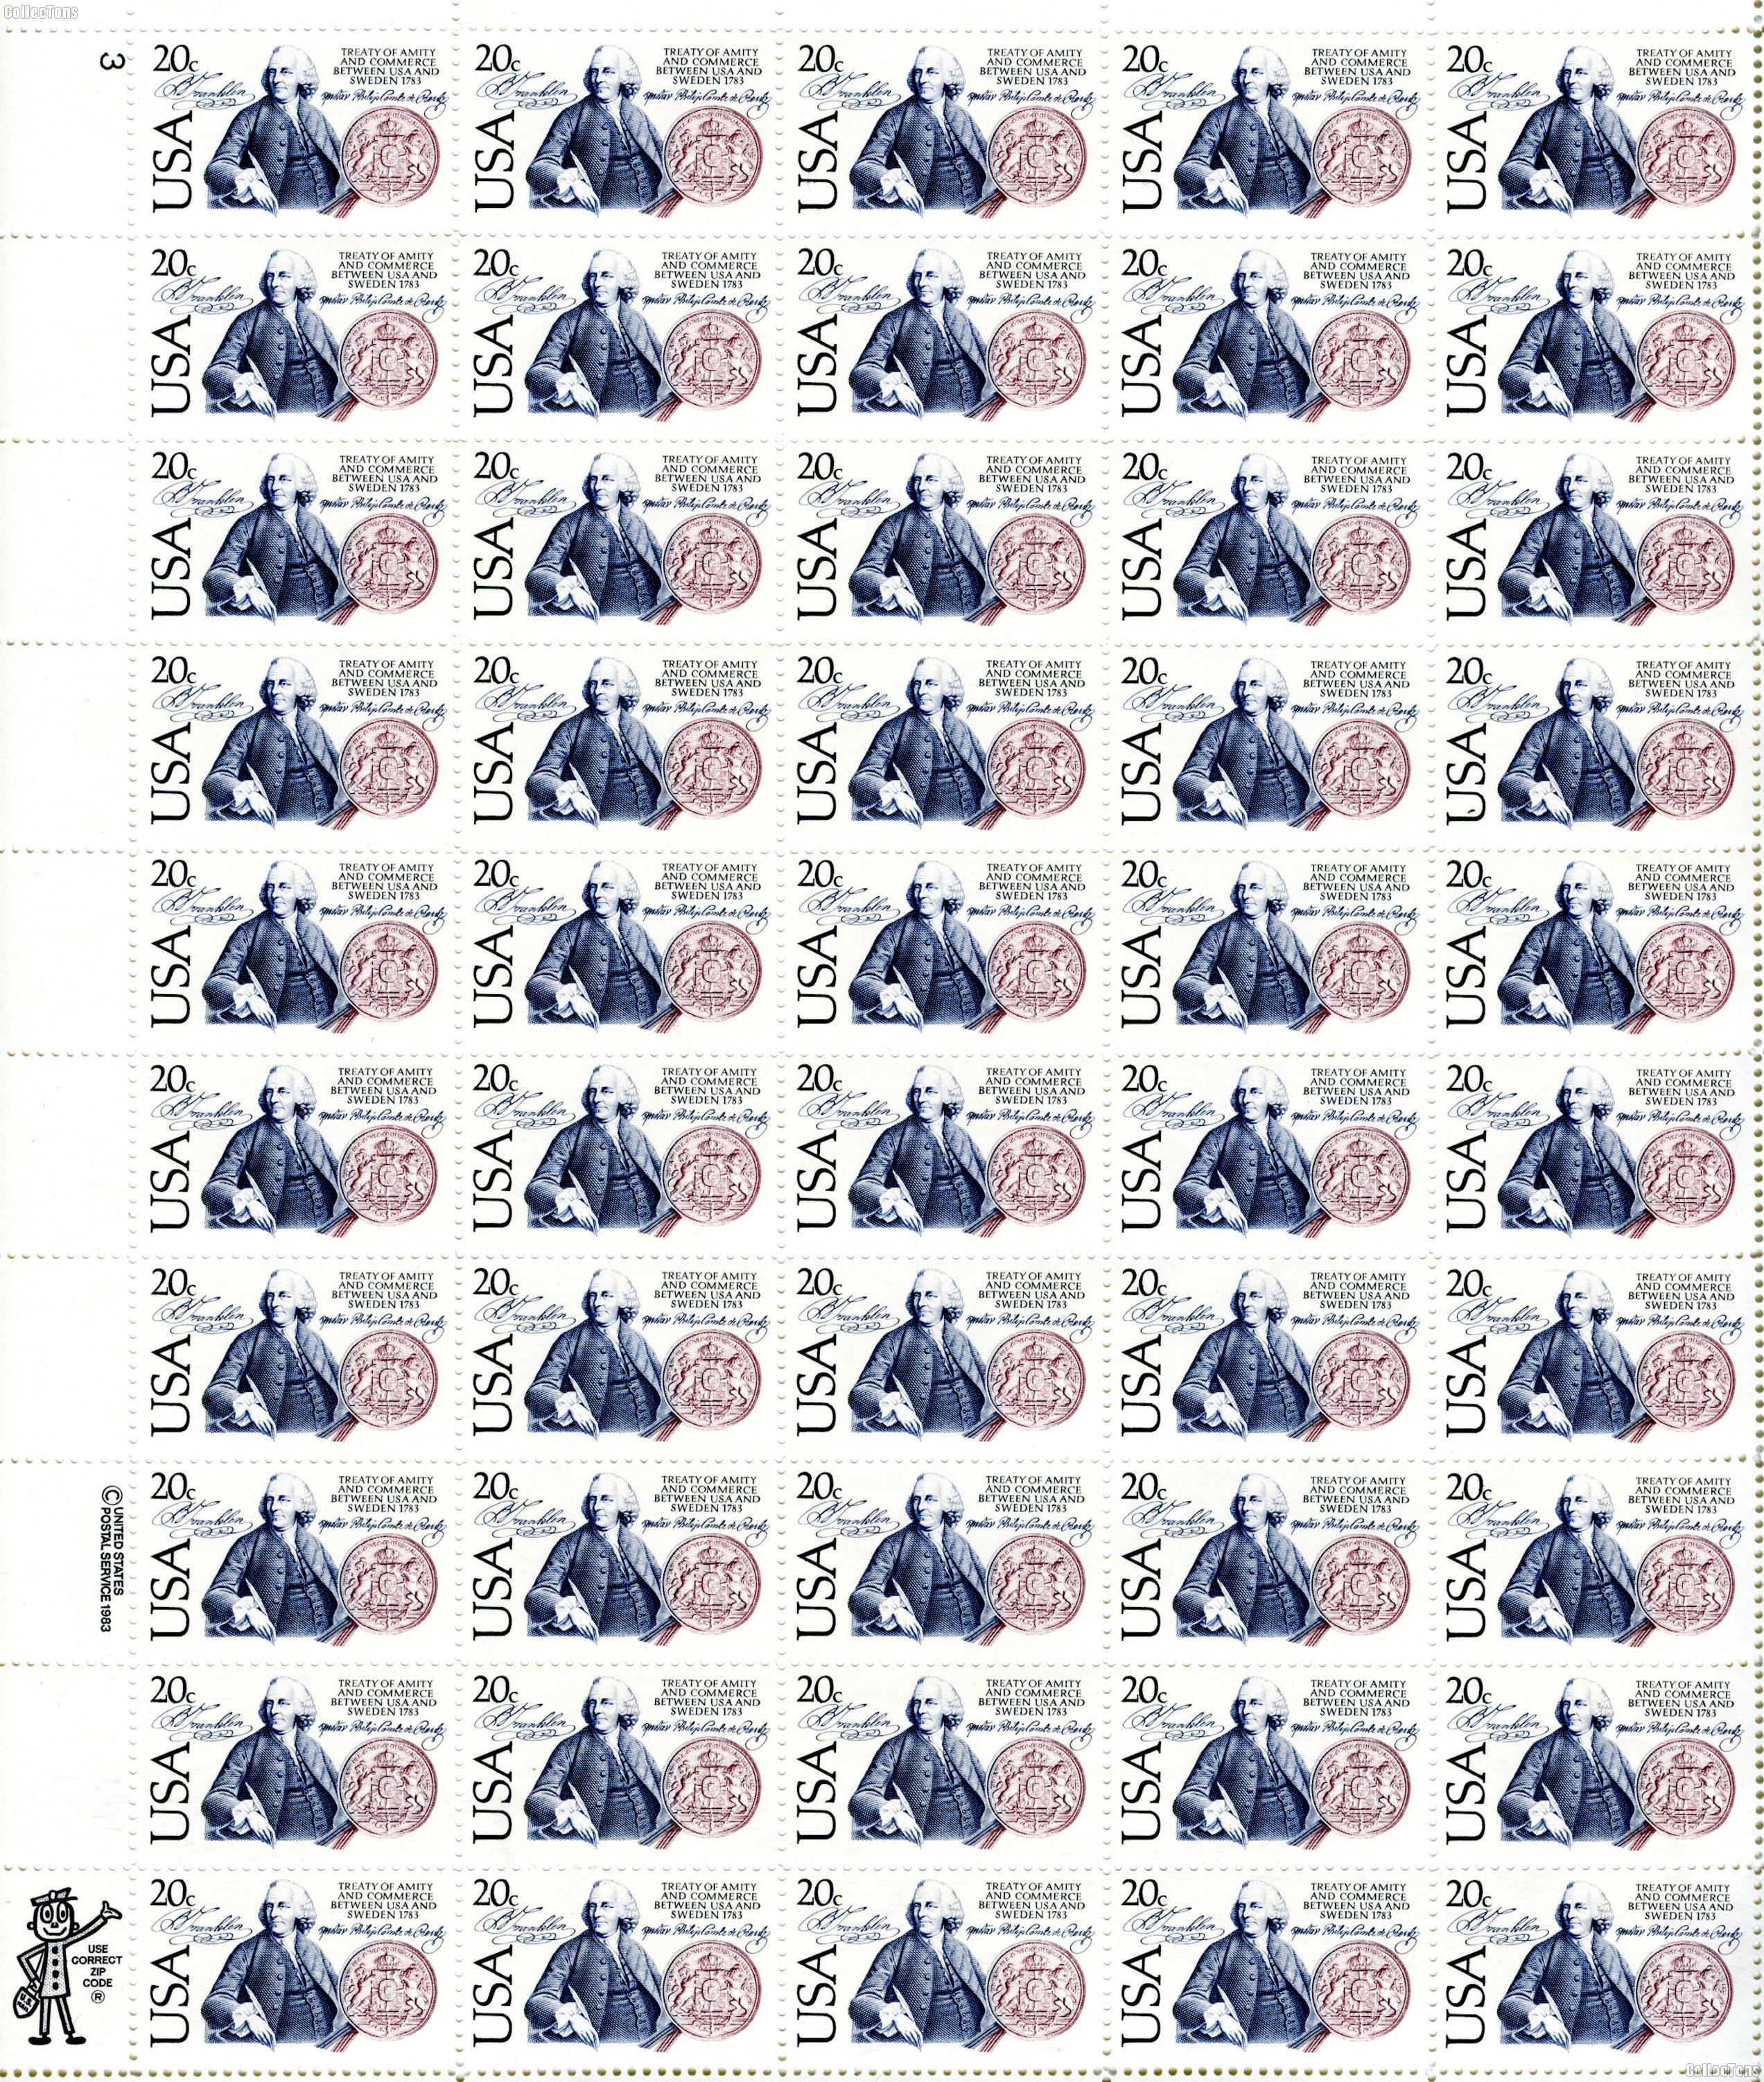 1983 US & Sweden 20 Cent US Postage Stamp MNH Sheet of 50 Scott #2036